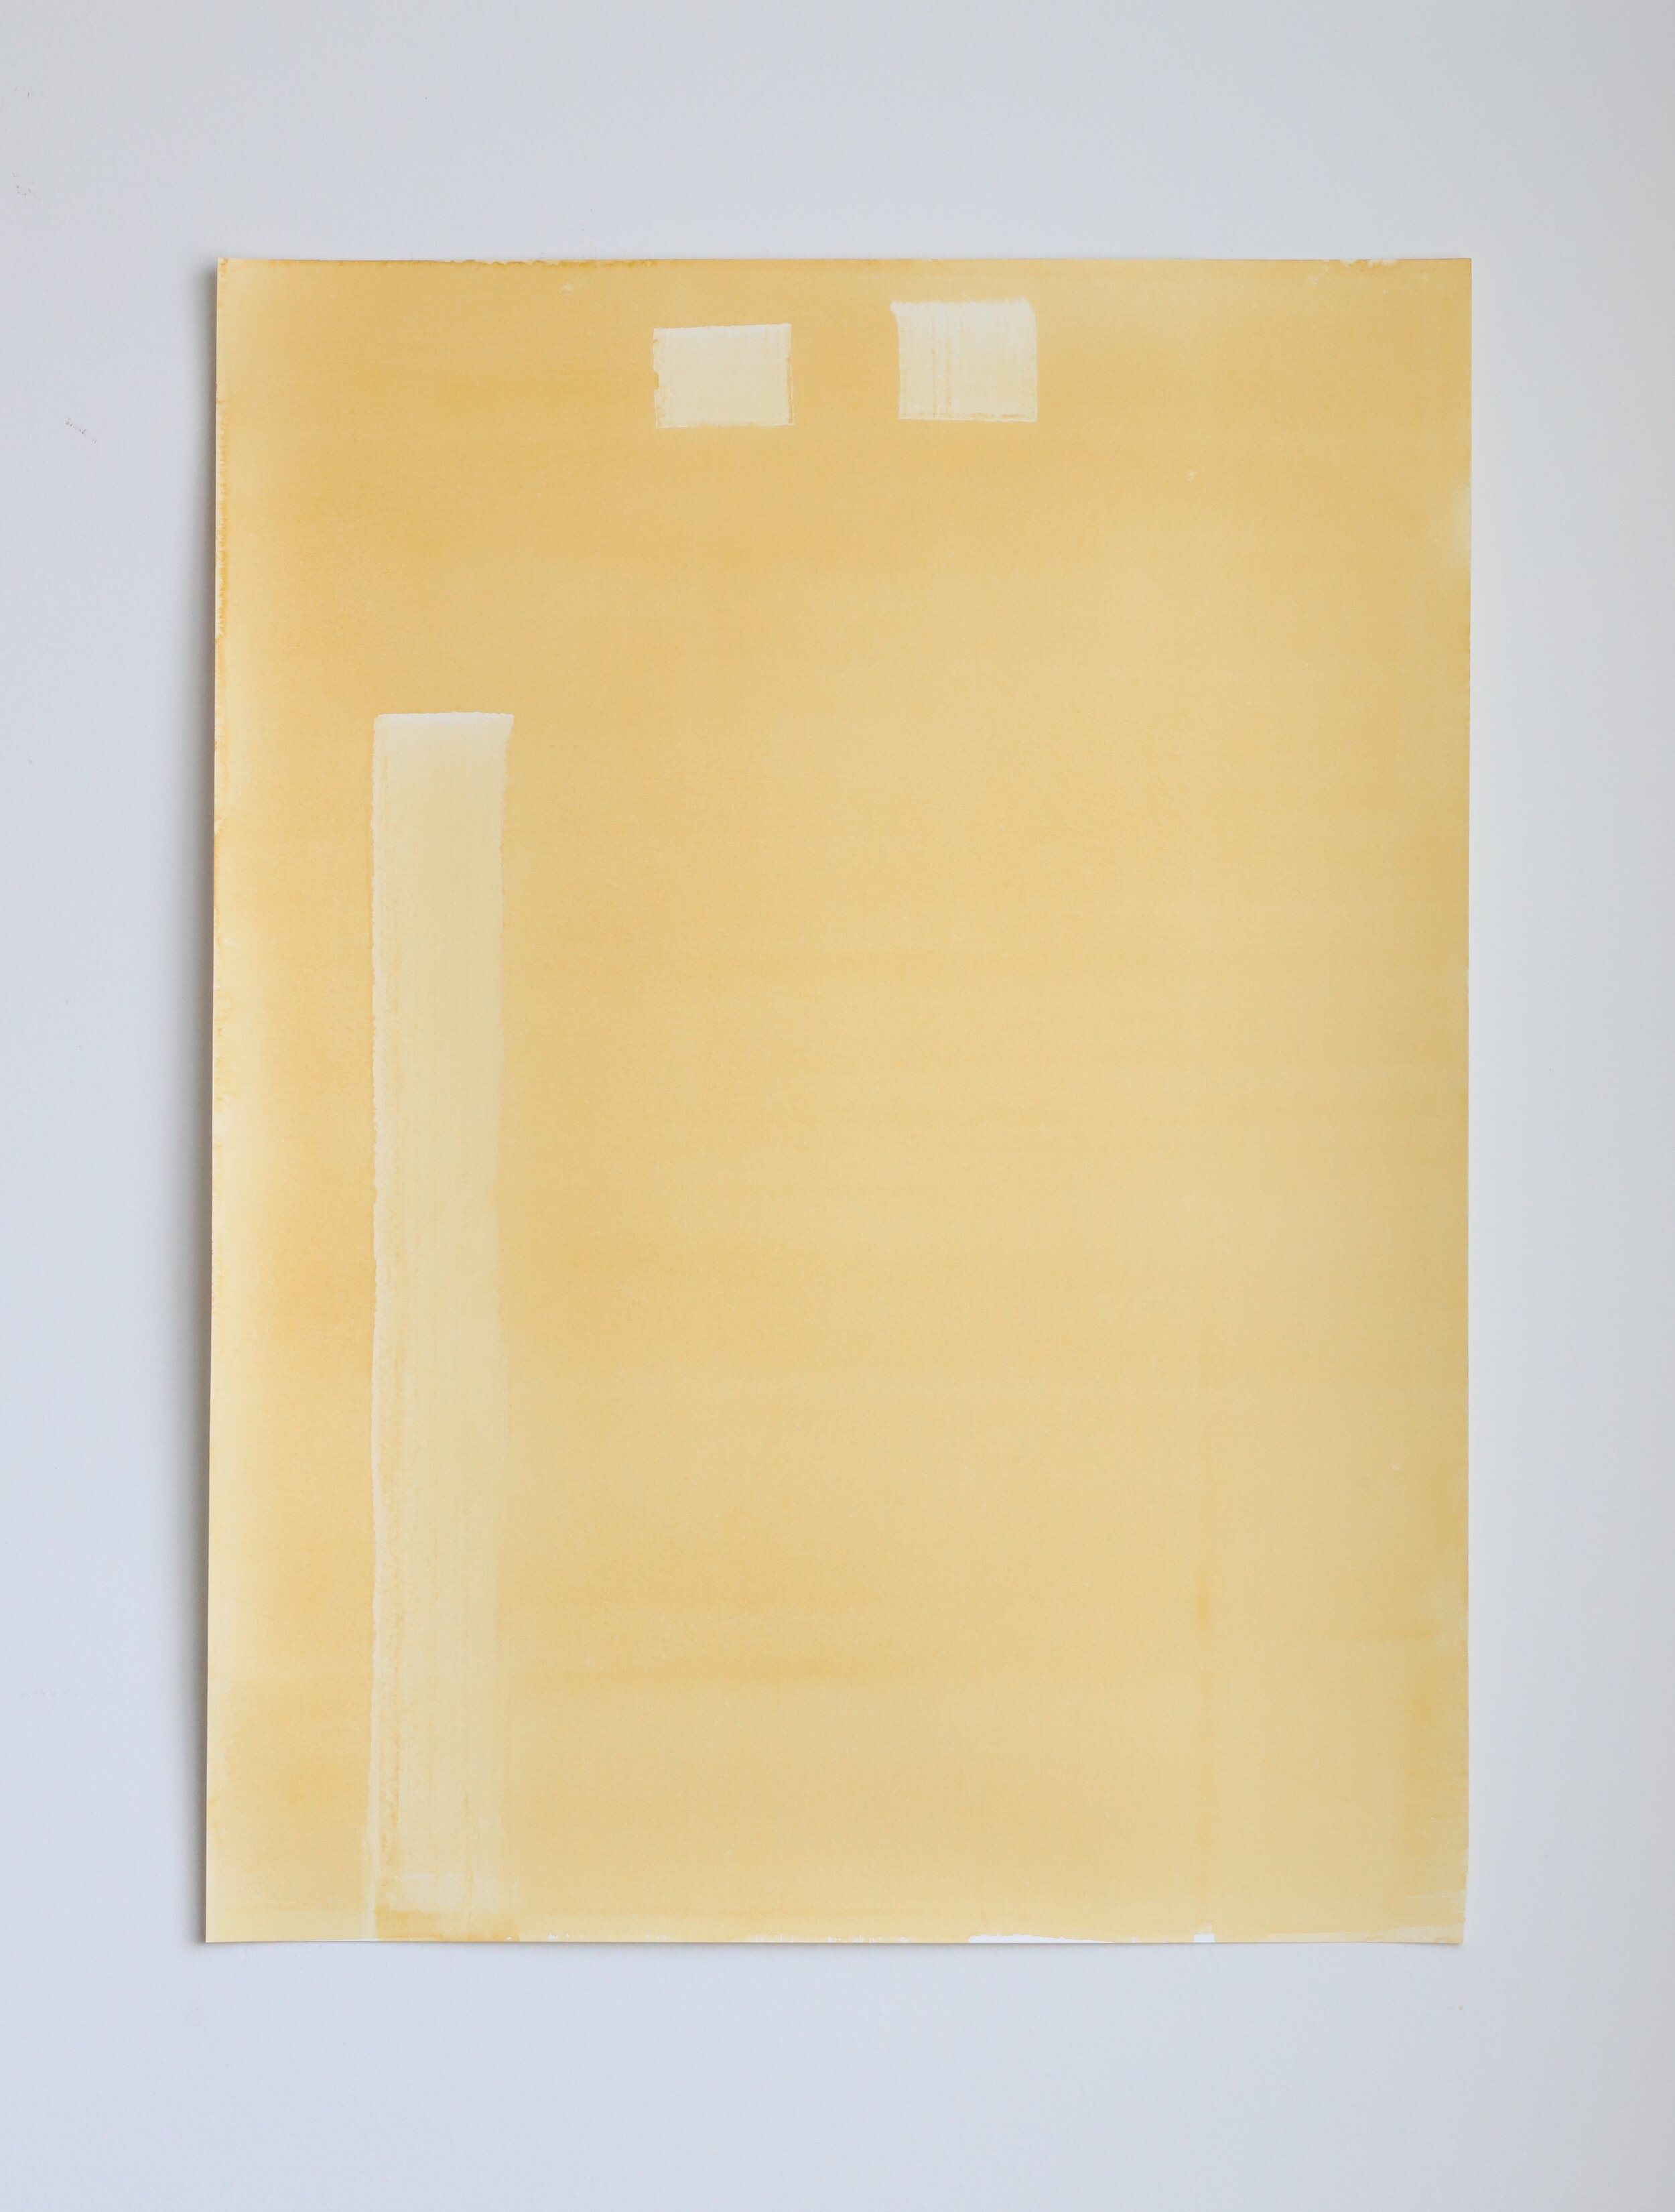  Joyce, watercolor on paper, 61x46cm, 2019 